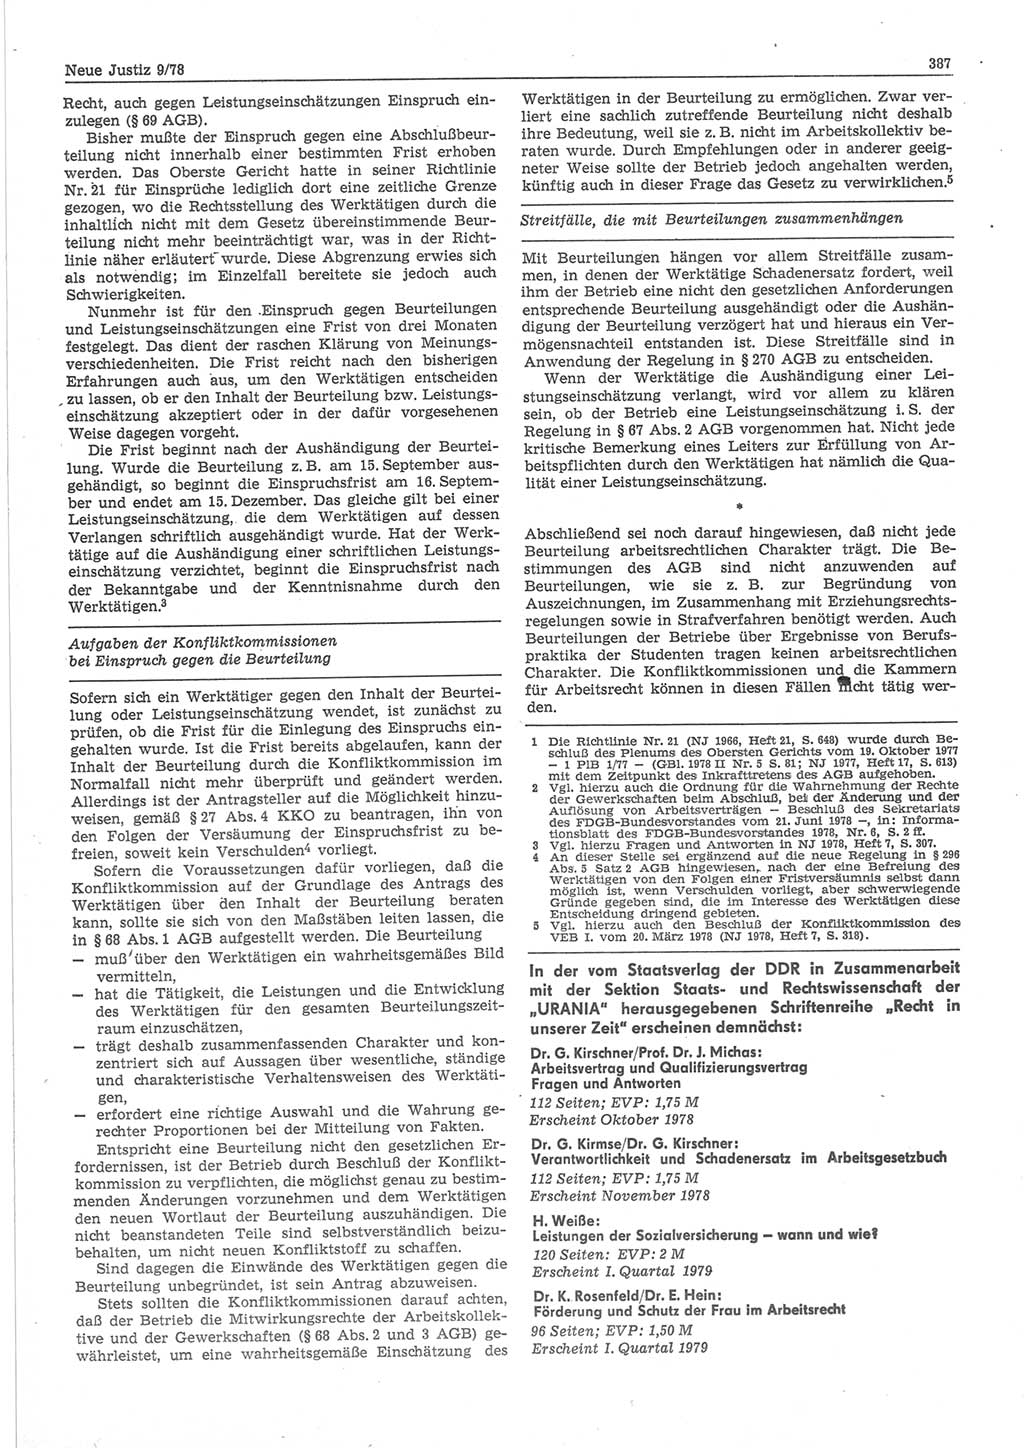 Neue Justiz (NJ), Zeitschrift für sozialistisches Recht und Gesetzlichkeit [Deutsche Demokratische Republik (DDR)], 32. Jahrgang 1978, Seite 387 (NJ DDR 1978, S. 387)